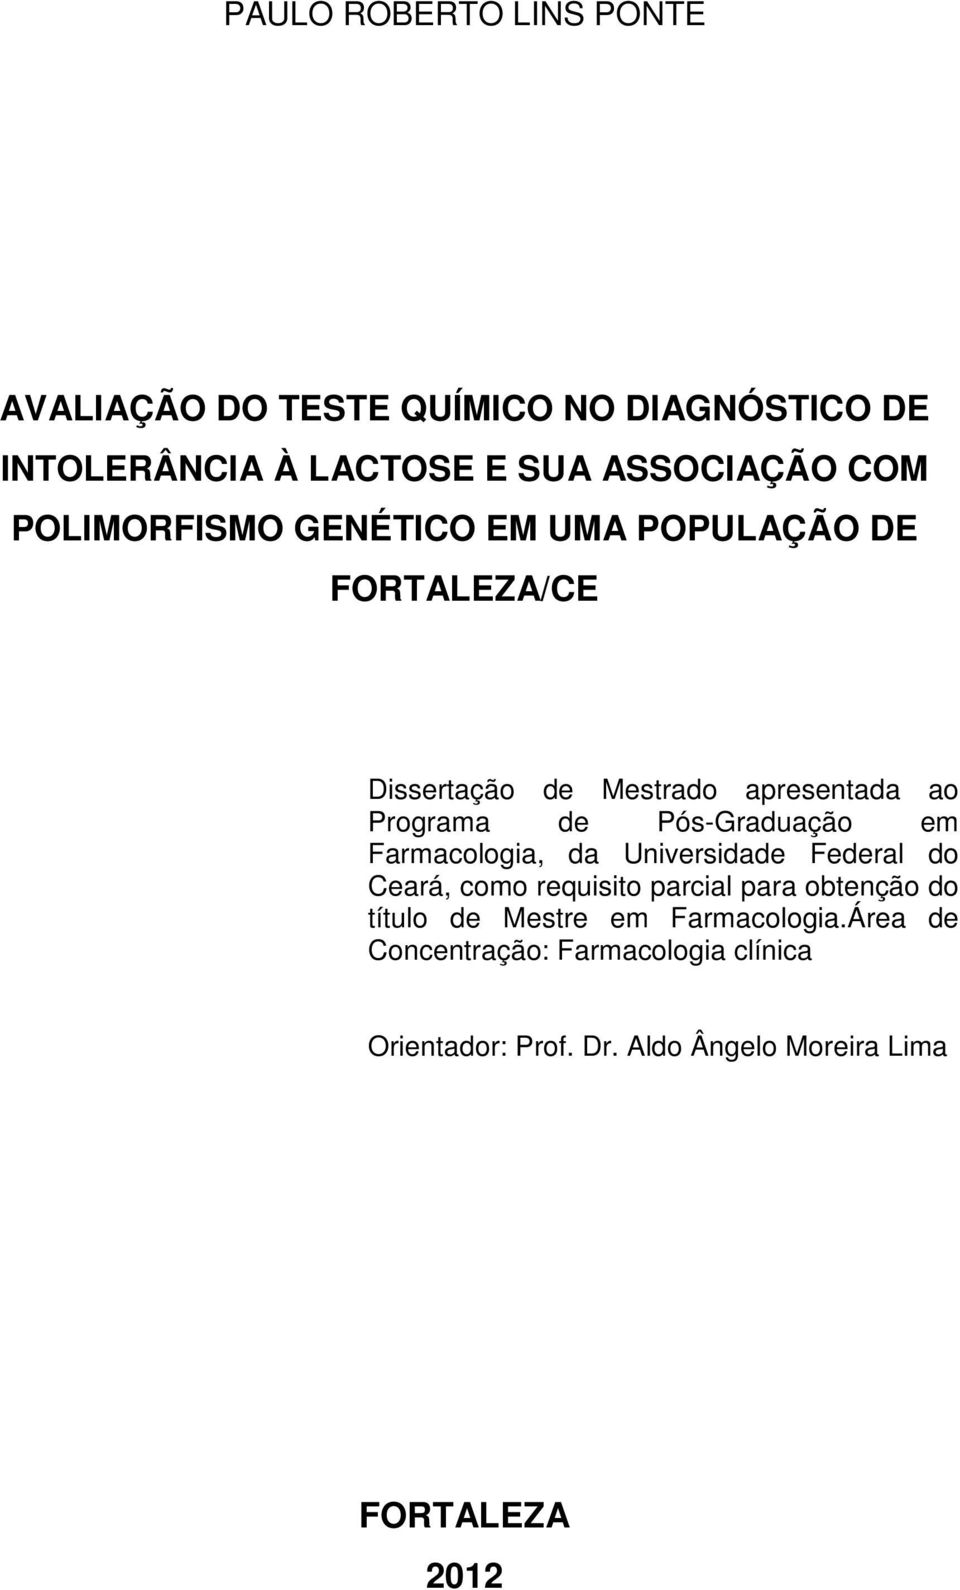 Pós-Graduação em Farmacologia, da Universidade Federal do Ceará, como requisito parcial para obtenção do título de